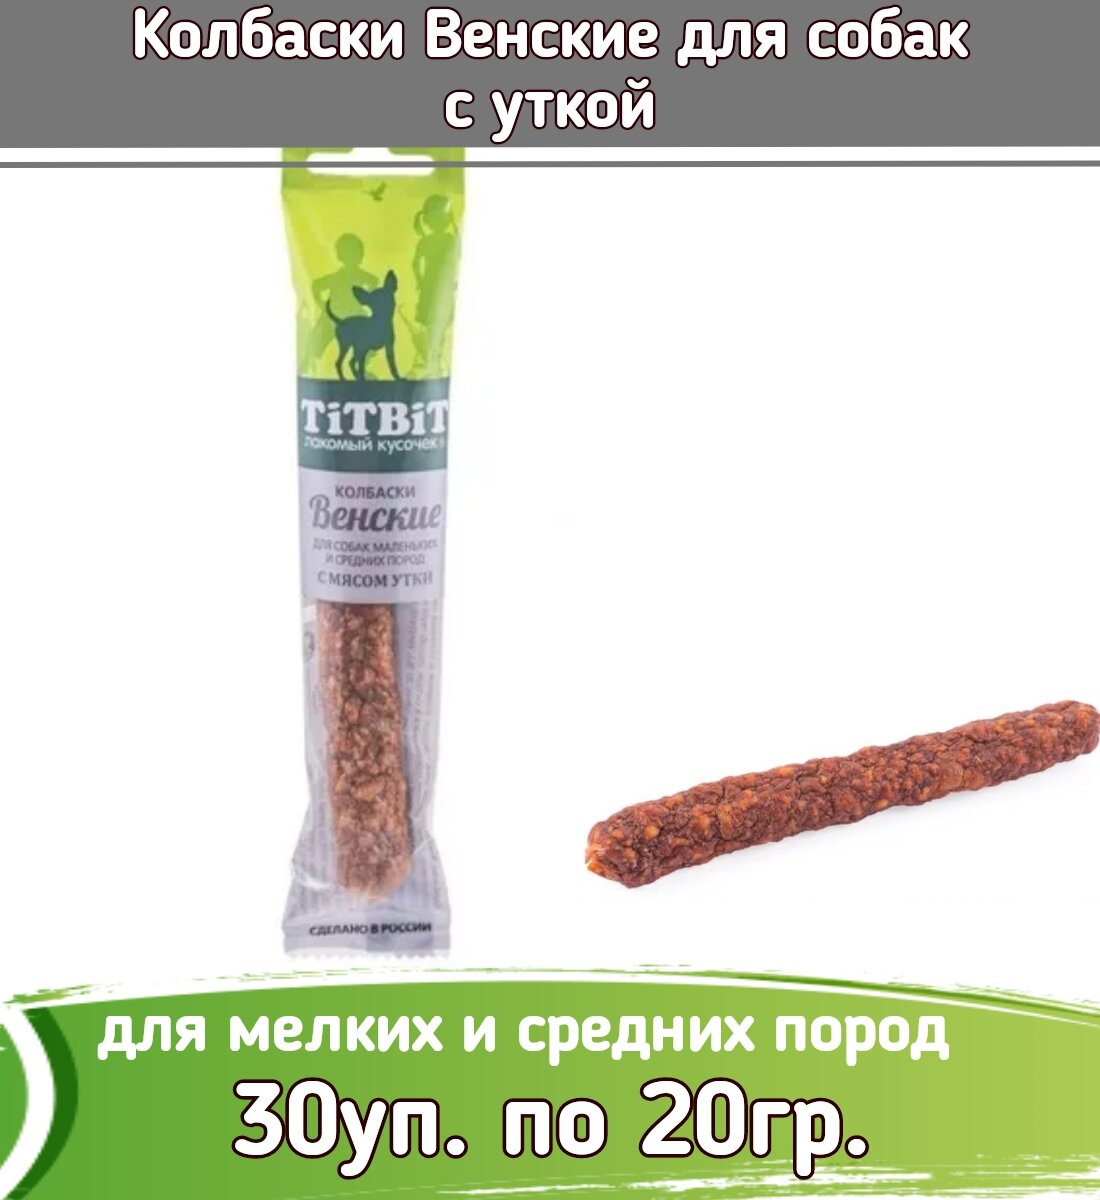 TiTBiT 30шт х 20г Колбаски Венские с мясом утки для собак маленьких и средних пород